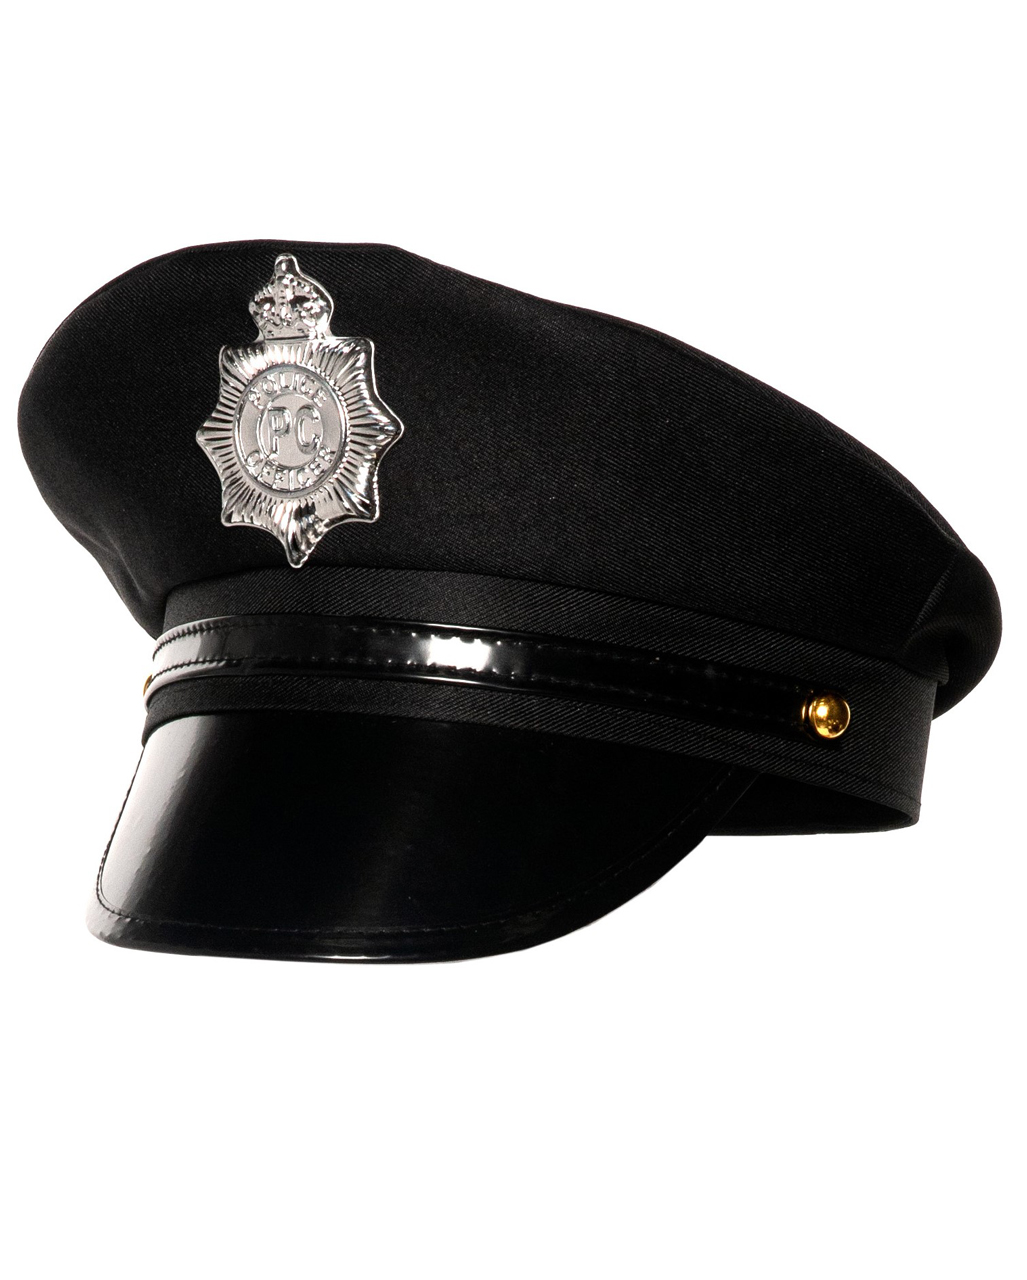 us police captain muetze us police captain hat uniform kostuemzubehoer 55200 01